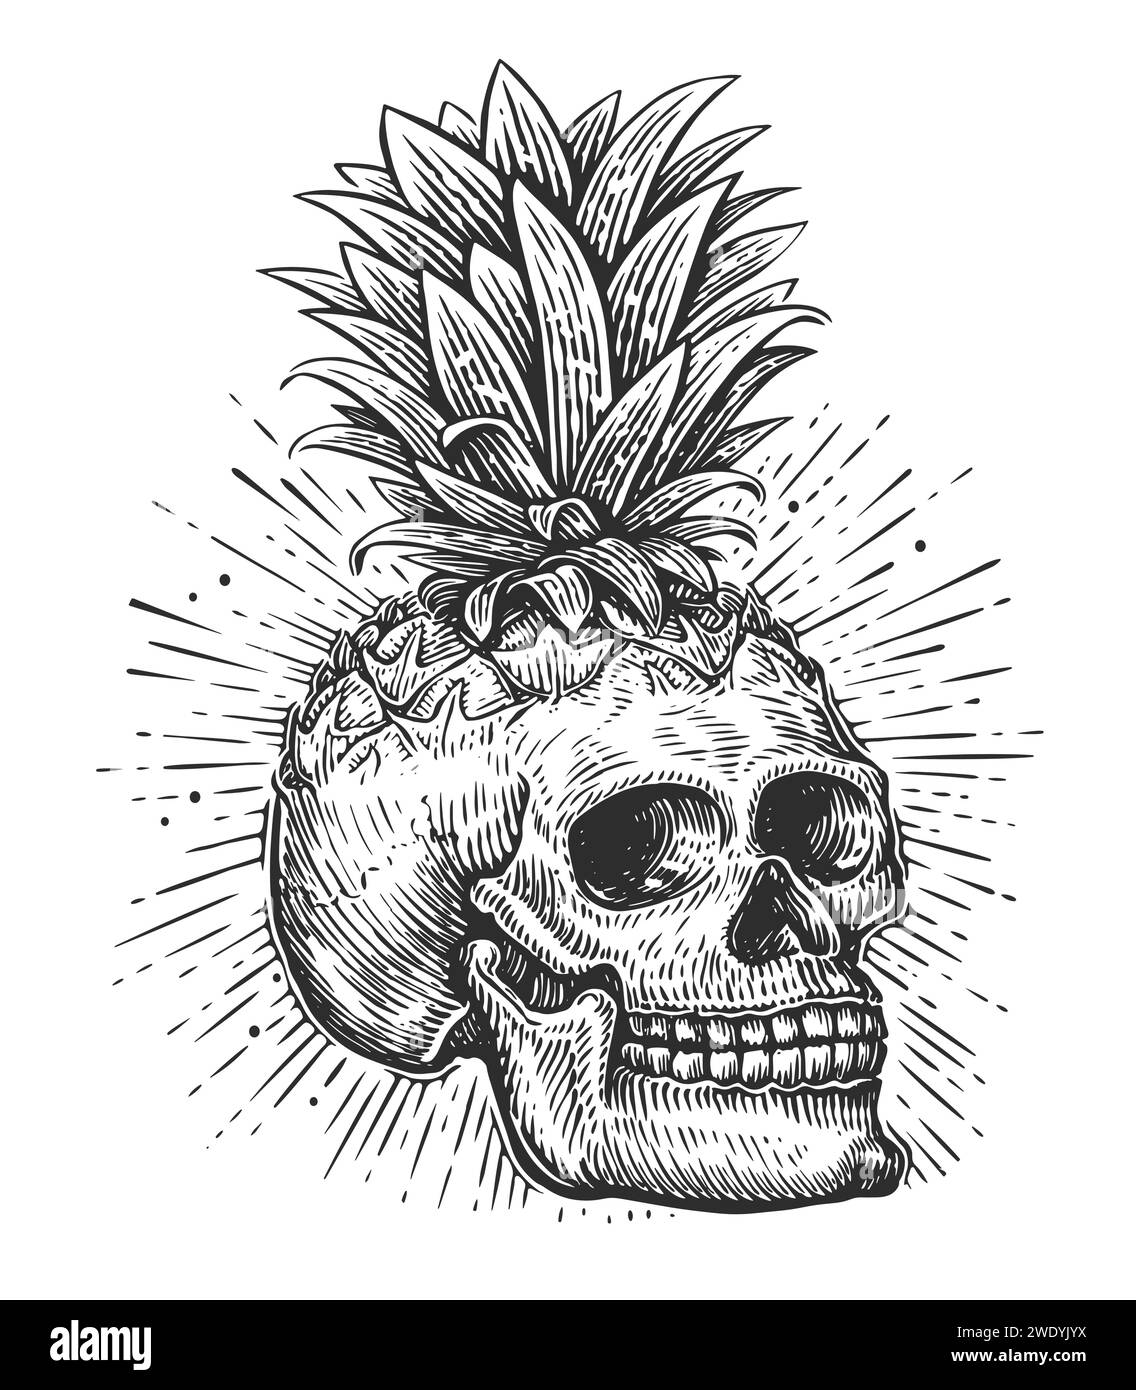 Crâne humain et feuilles. Tête de squelette dessinée à la main dans le style de gravure vintage. Illustration vectorielle d'esquisse Illustration de Vecteur